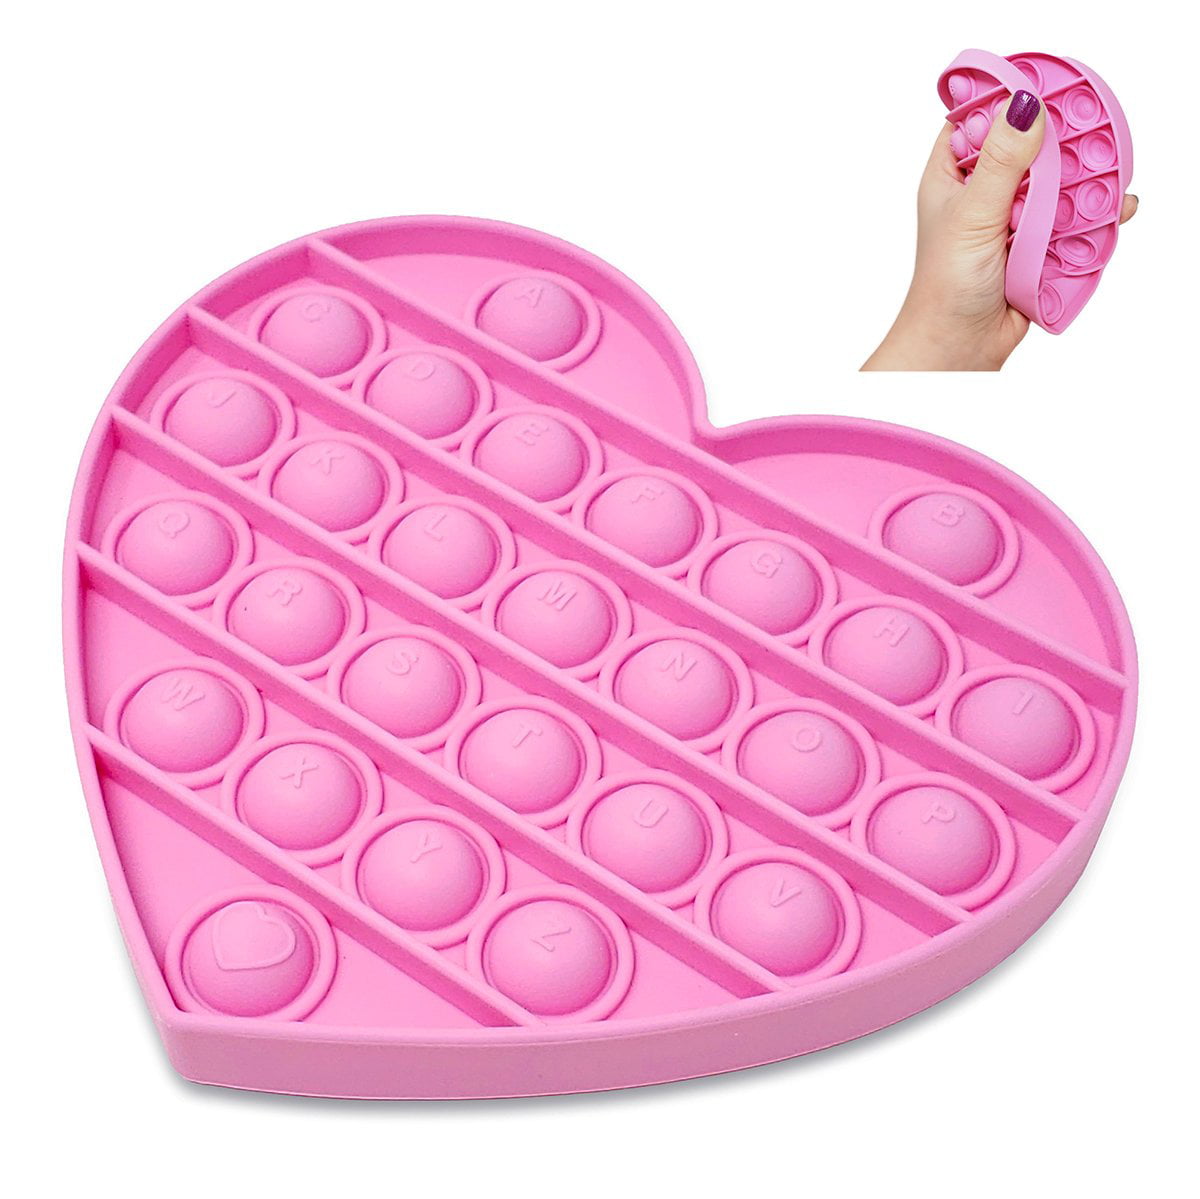 Soti Brand 2 pcs Pink Heart Push Pop Bubble Fidget Toy with Alphabet Letters 